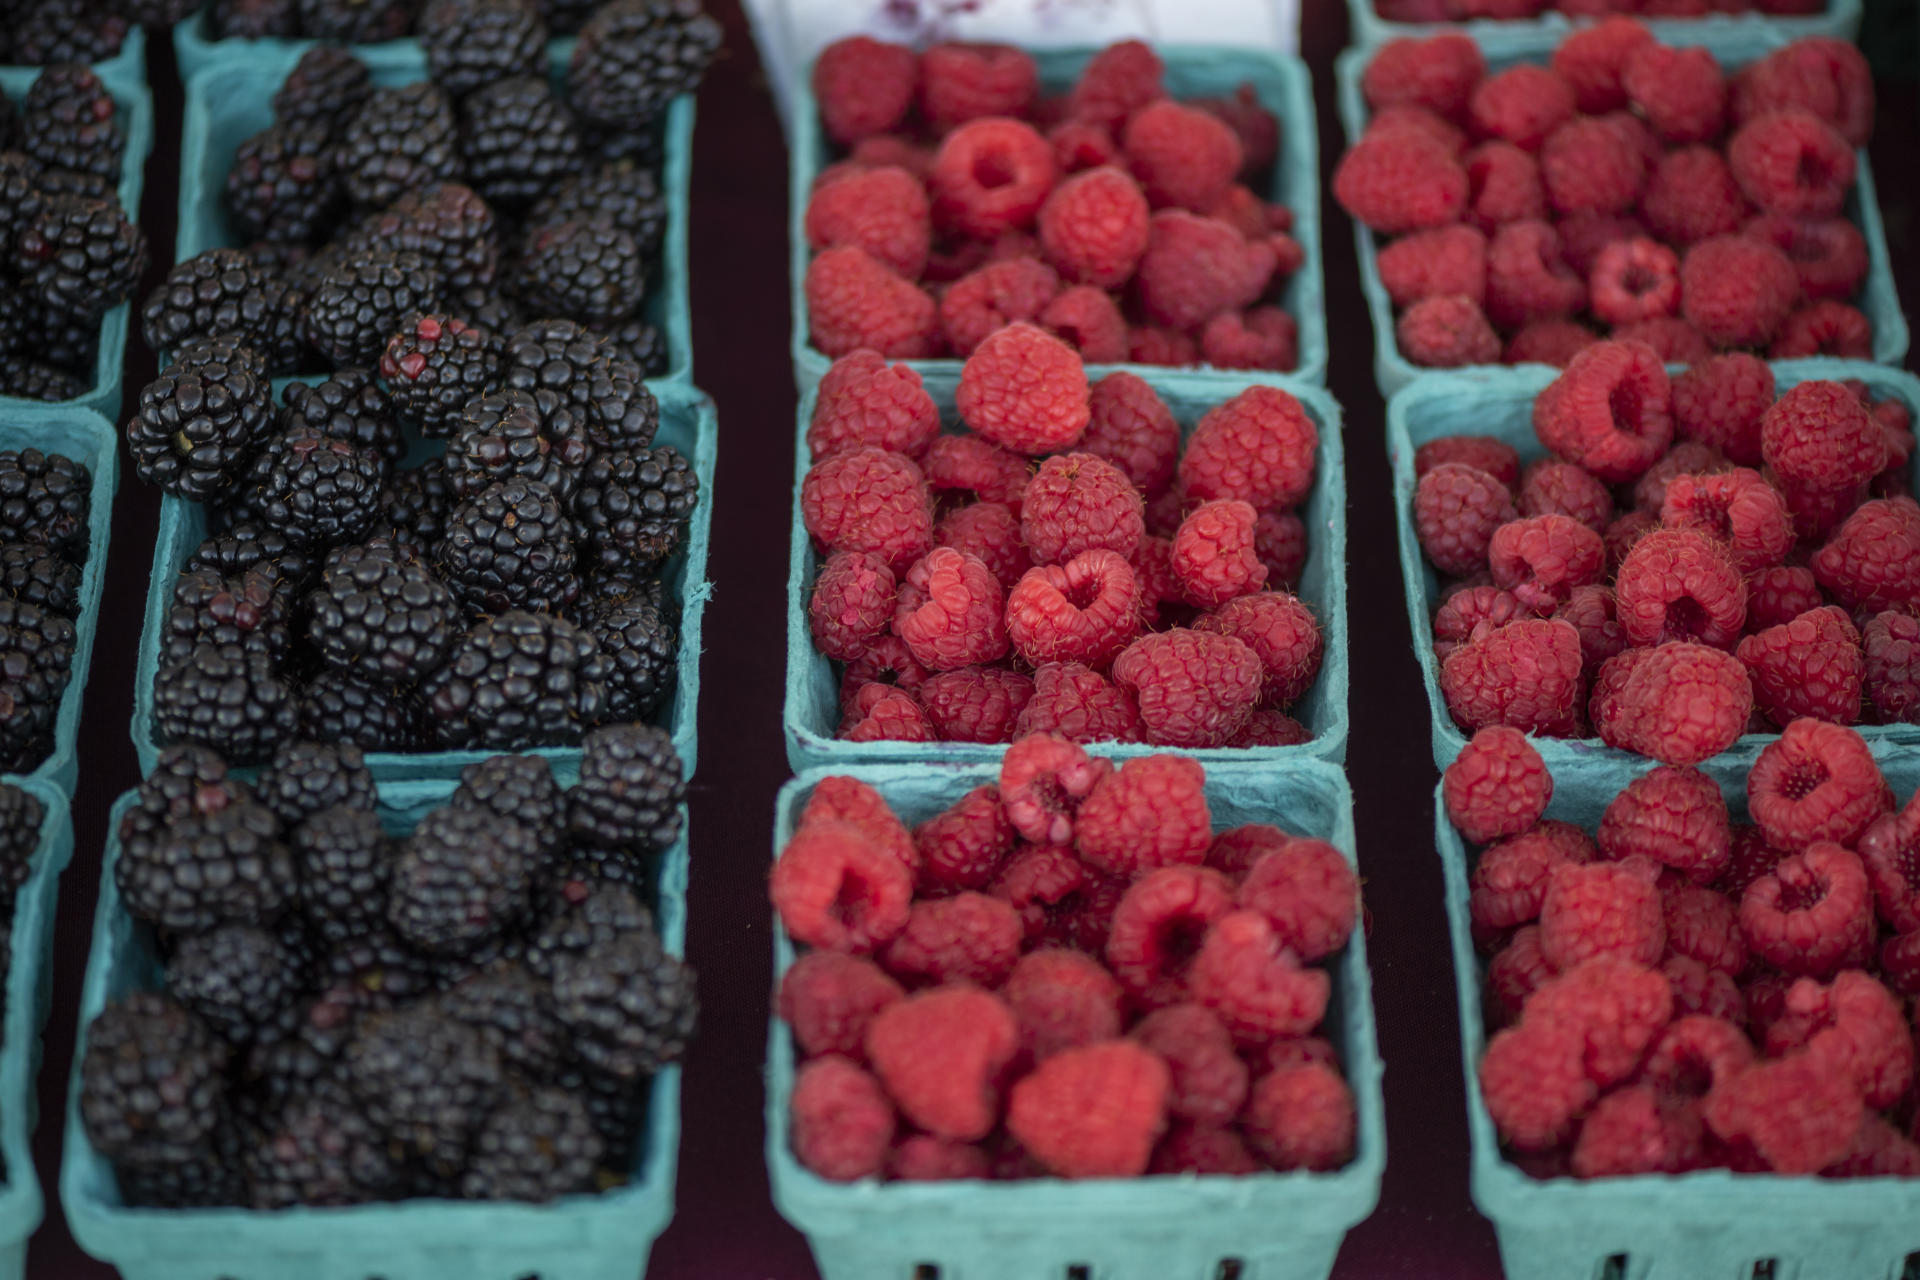 Boxes of beautiful blackberries and raspberries